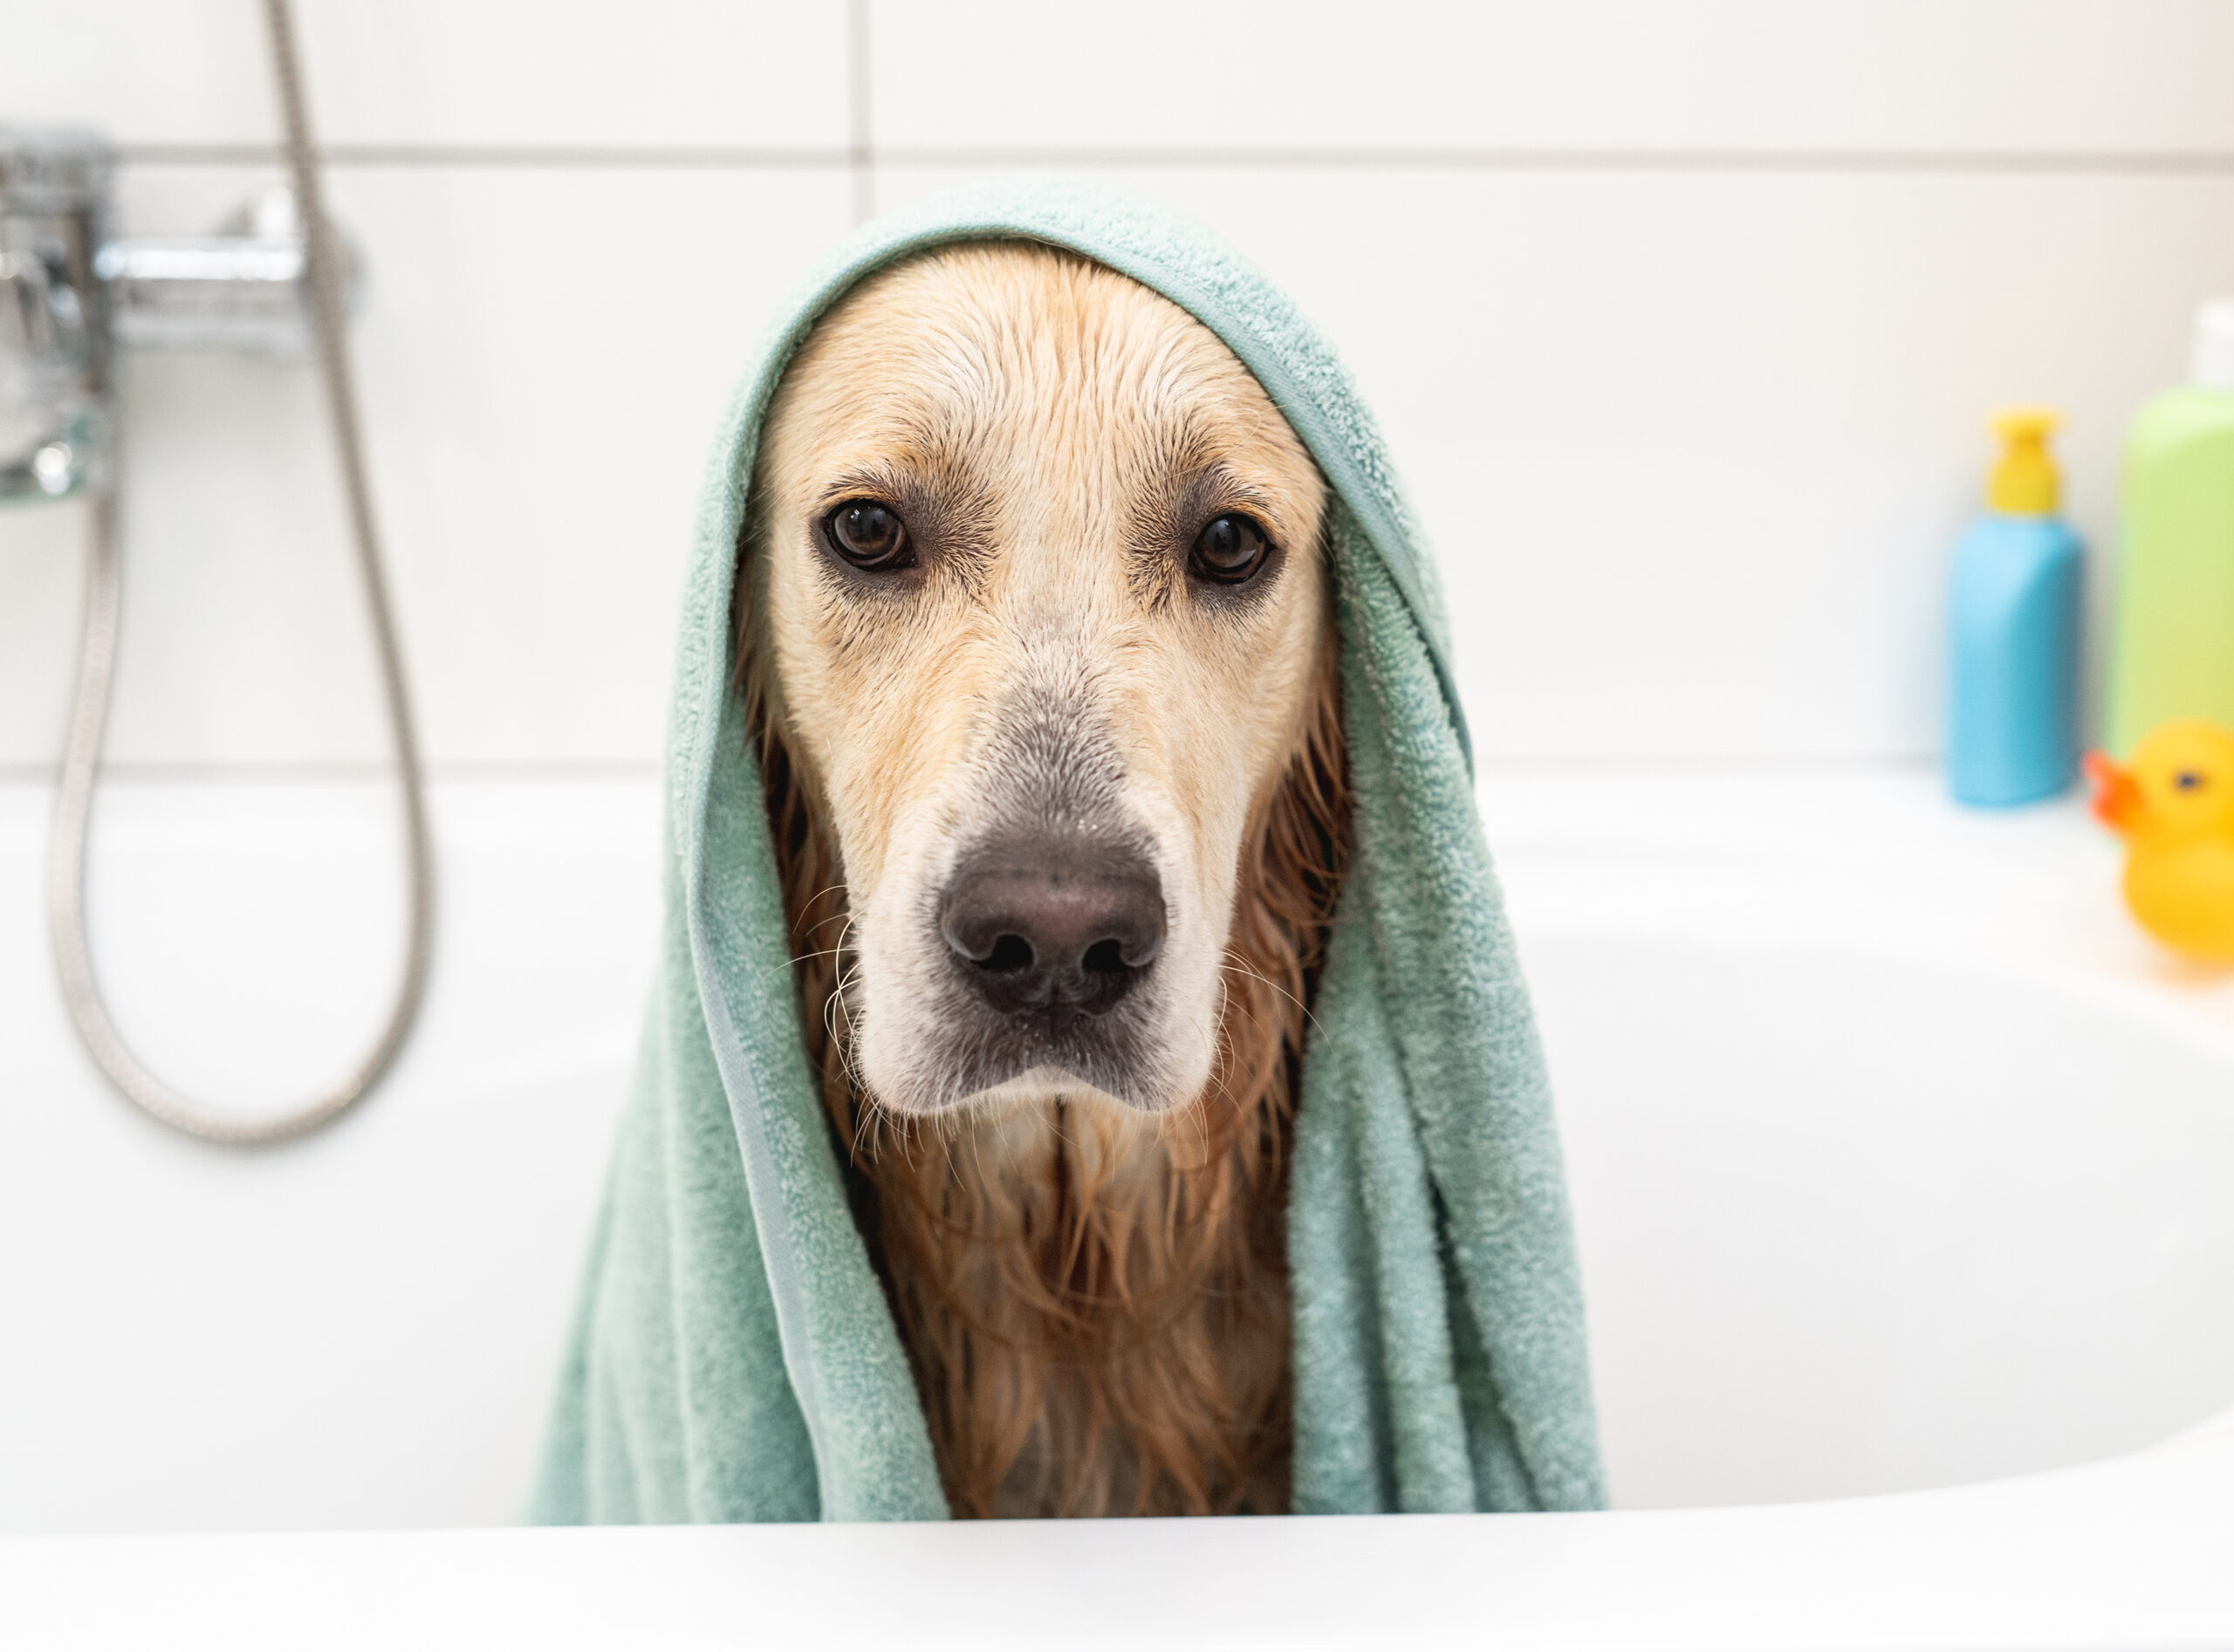 Golden retriever dog under towel sitting in bathtub after shower